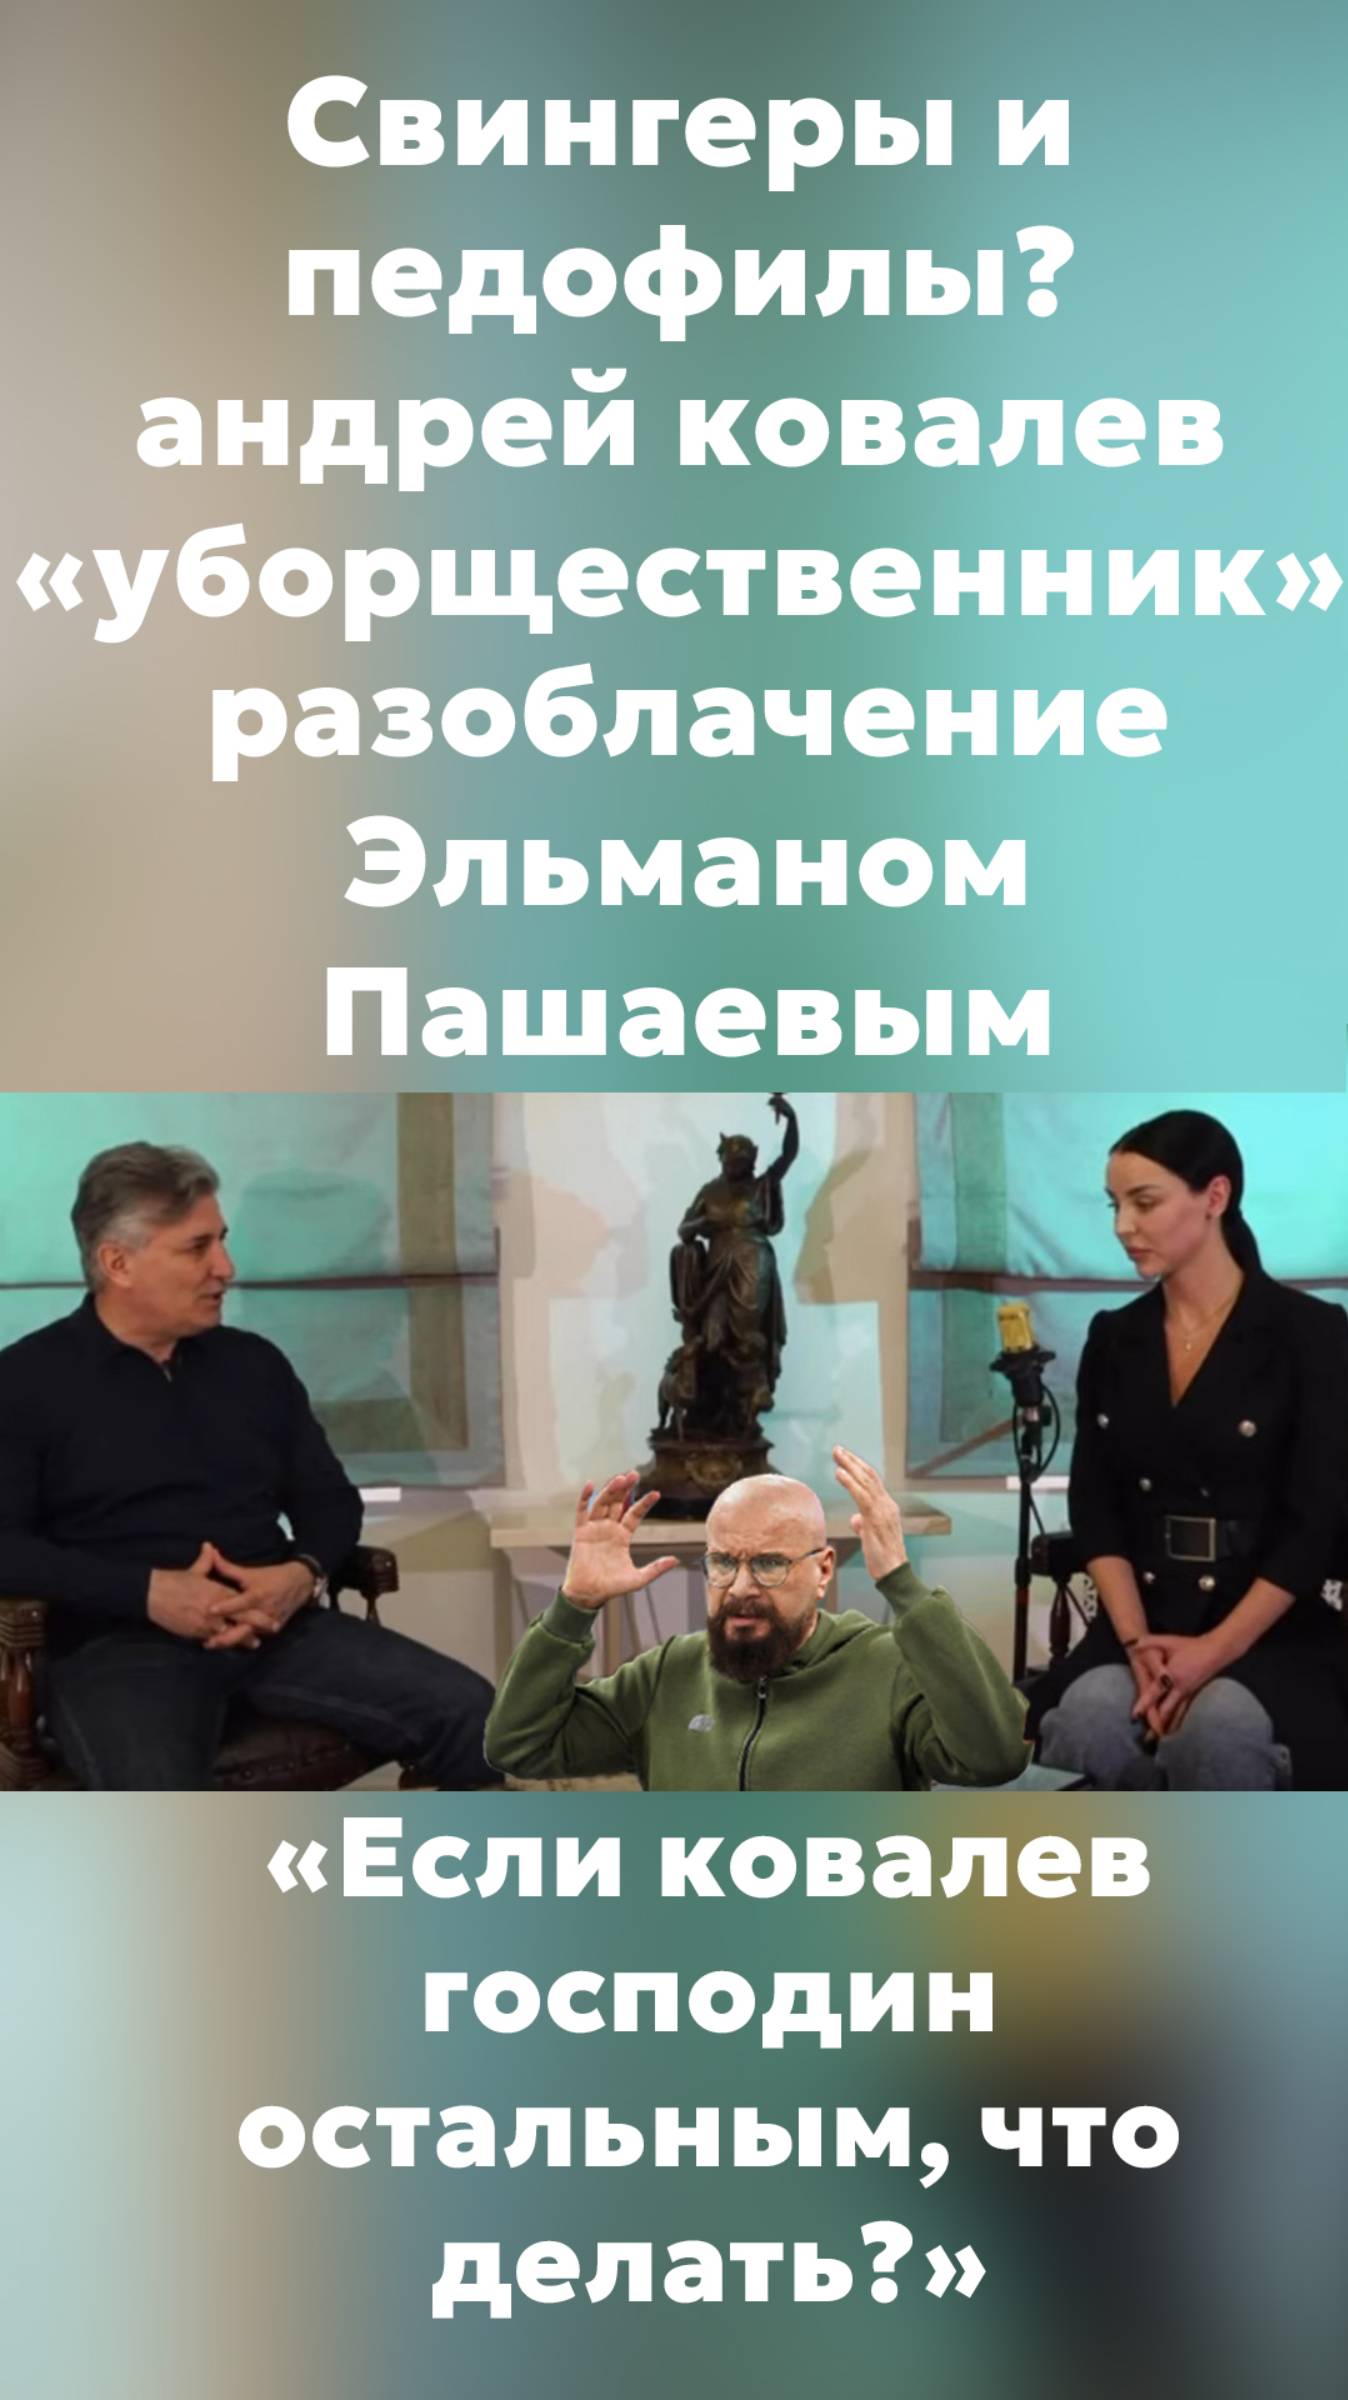 "Если ковалев господин, остальным, что делать" #эльманпашаев #интервью